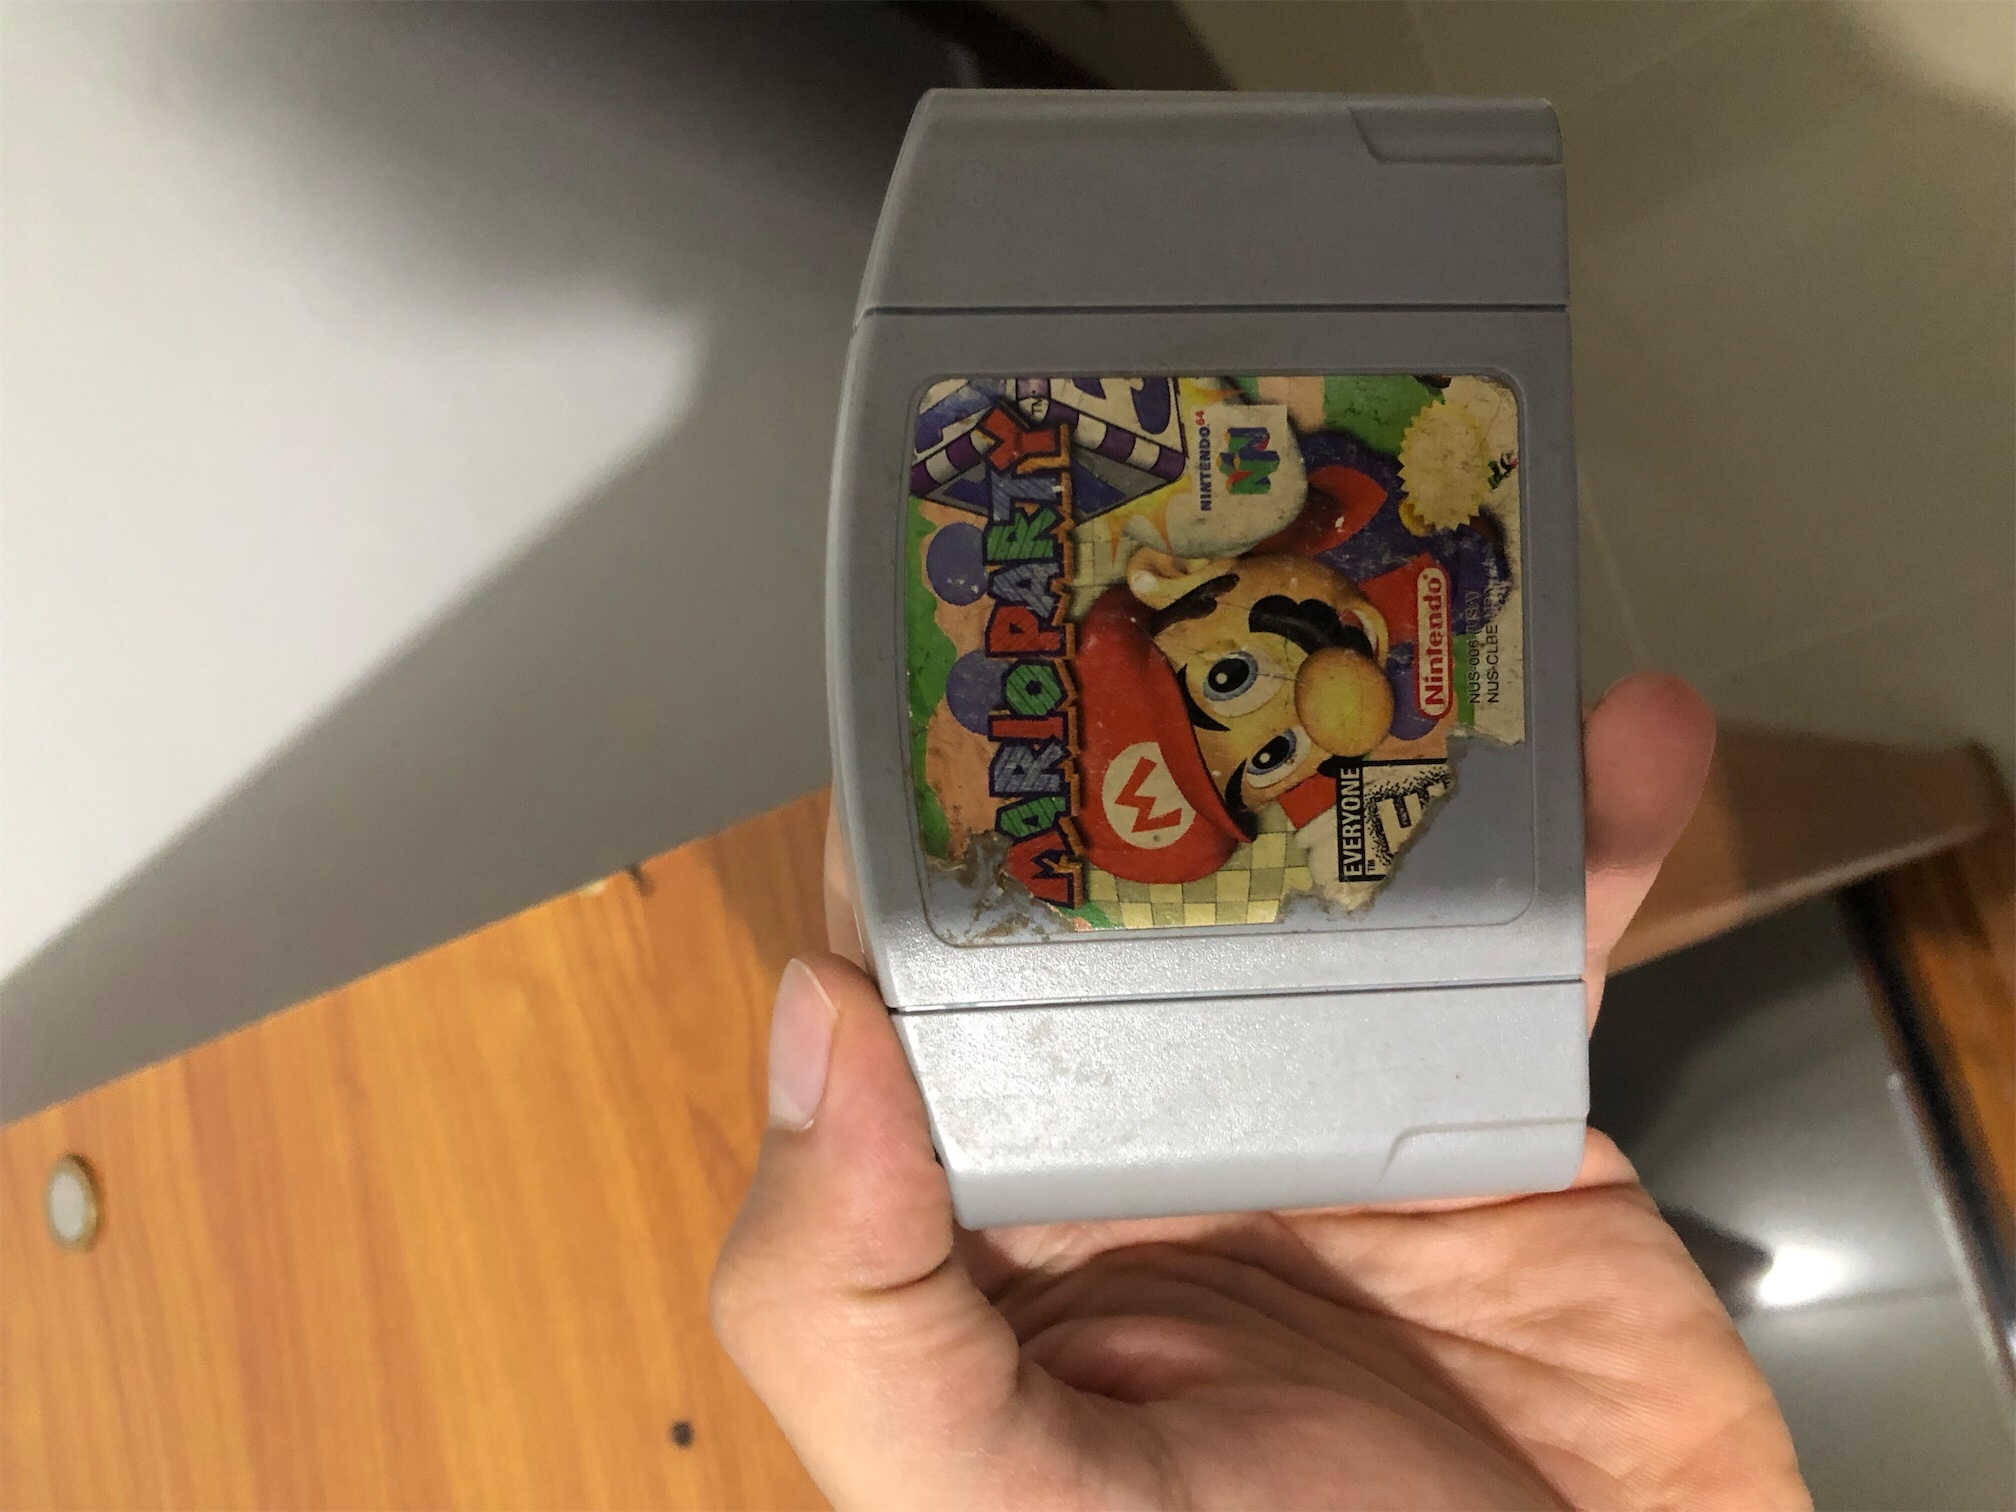 consolas y videojuegos - Mario Party